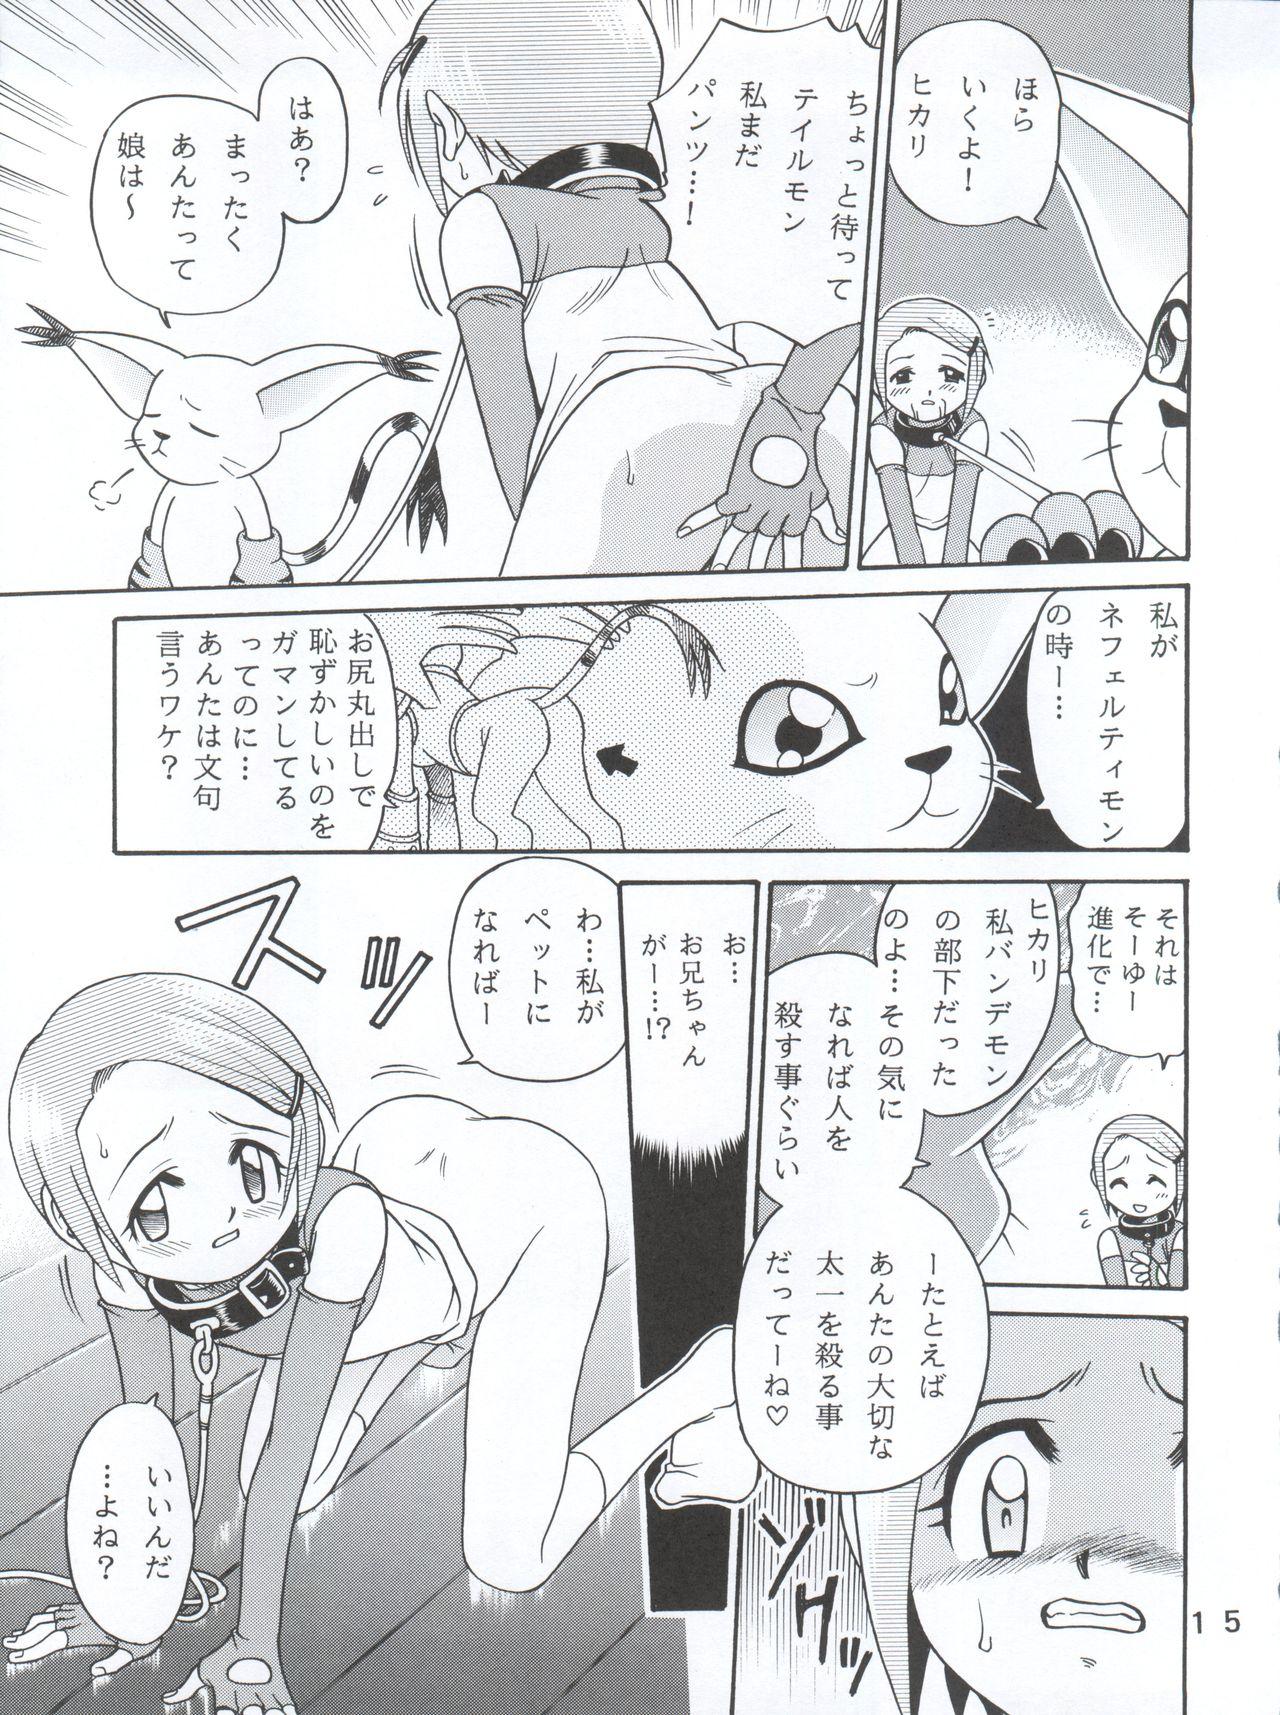 [Studio Tar (Kyouichirou, Shamon)] Yagami-san-chi no, Katei no Jijou. (Digimon Adventure 02) [2001-01-31] 14